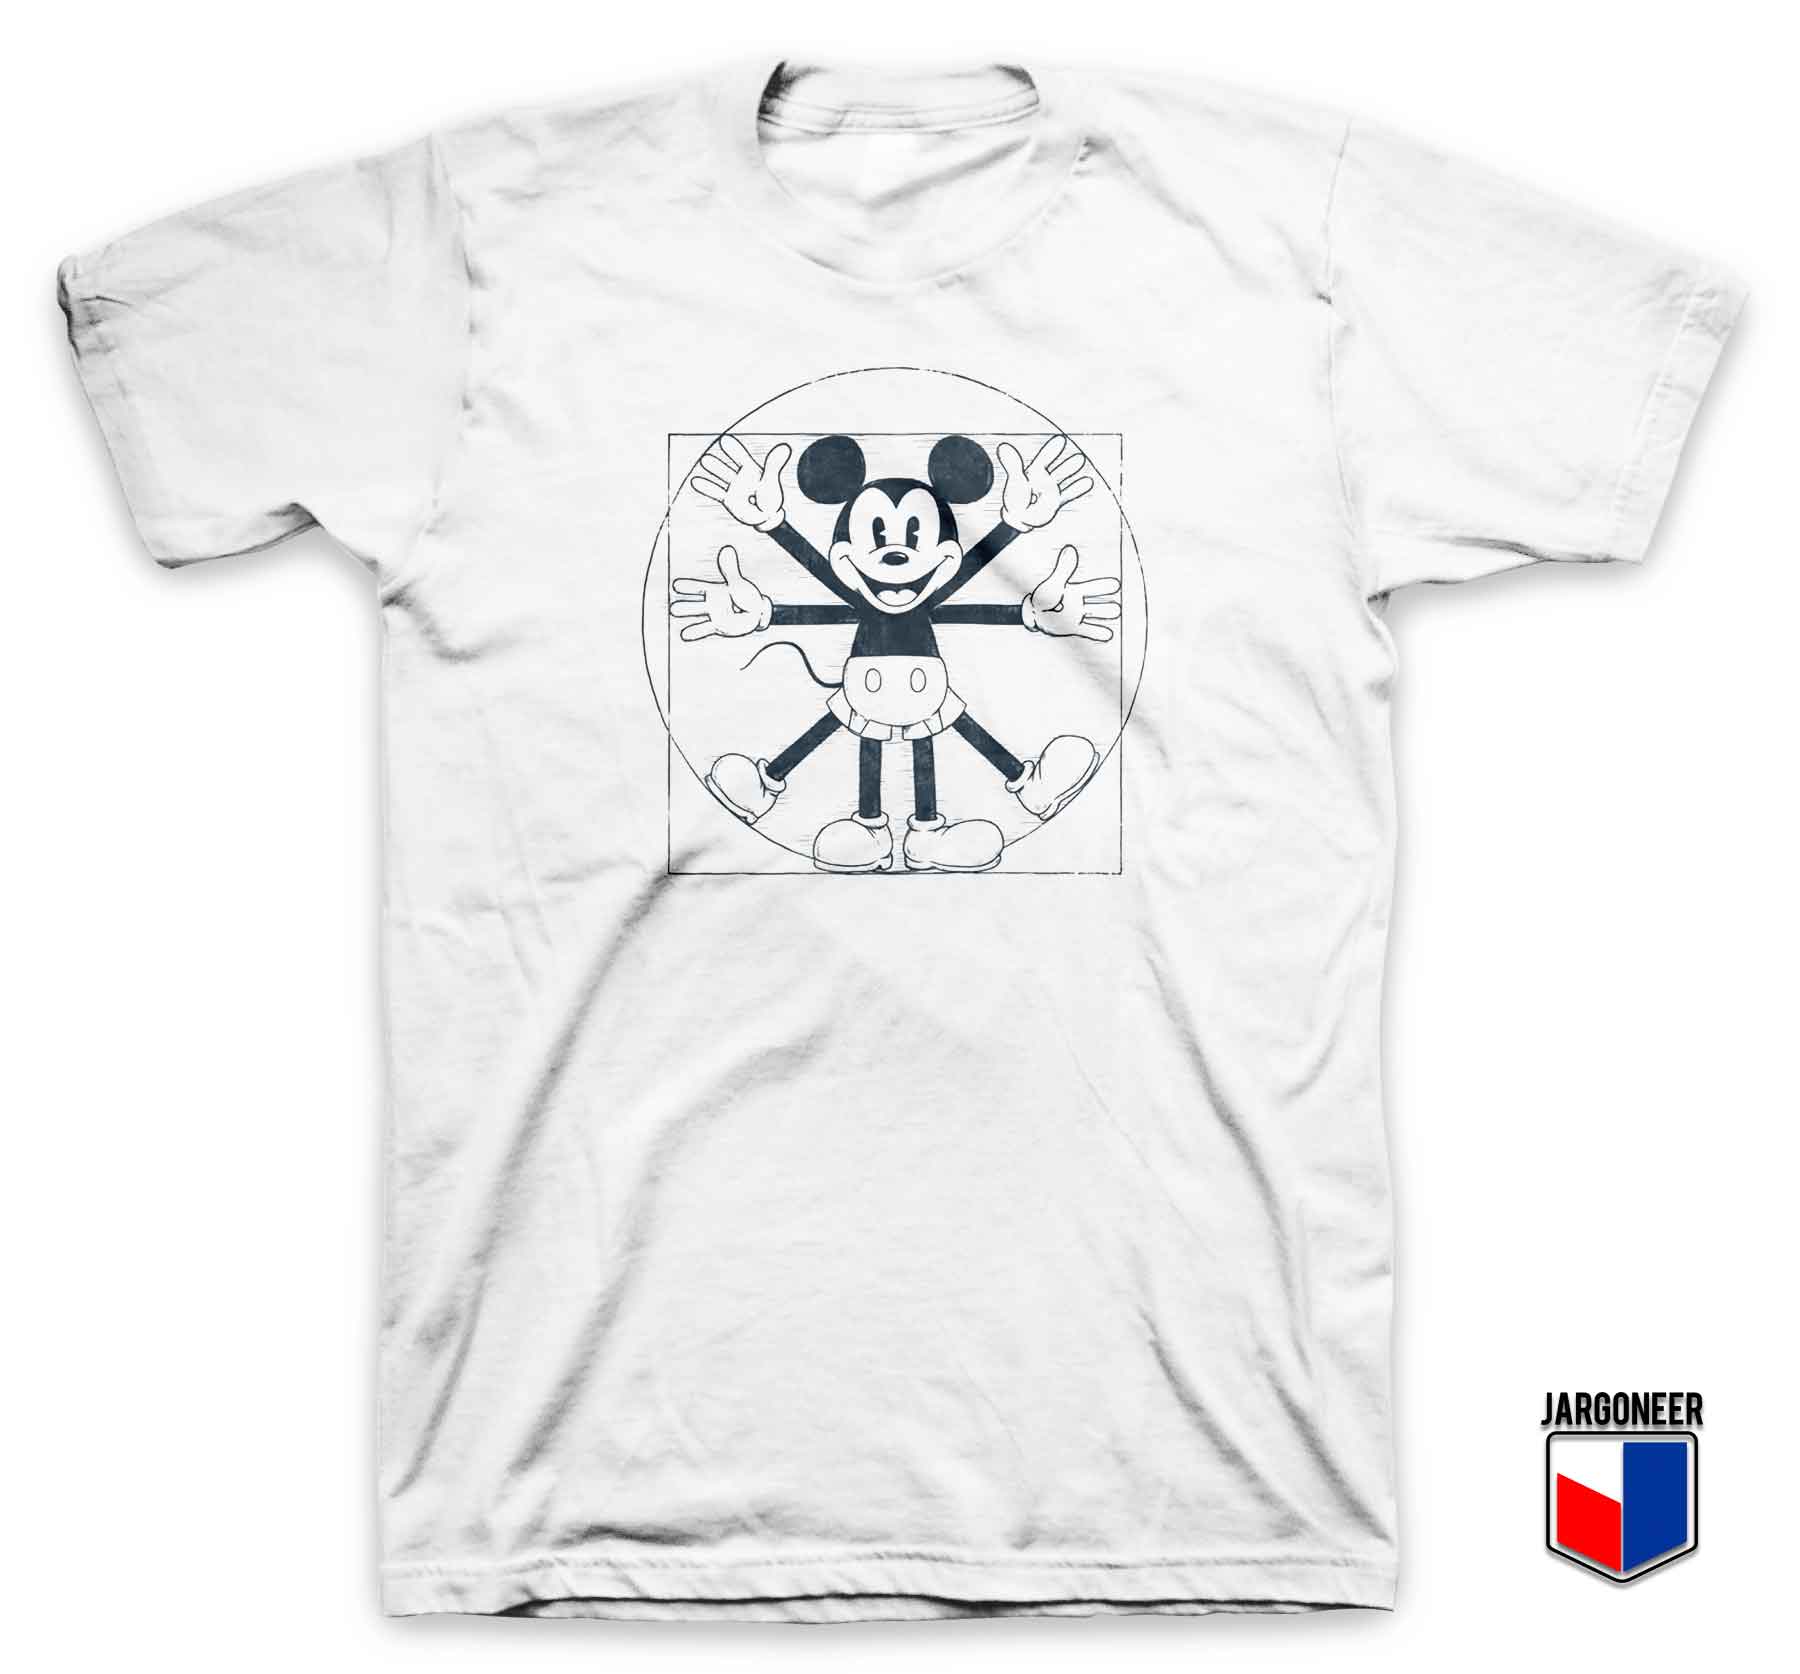 Mouse Vitruvian - Shop Unique Graphic Cool Shirt Designs